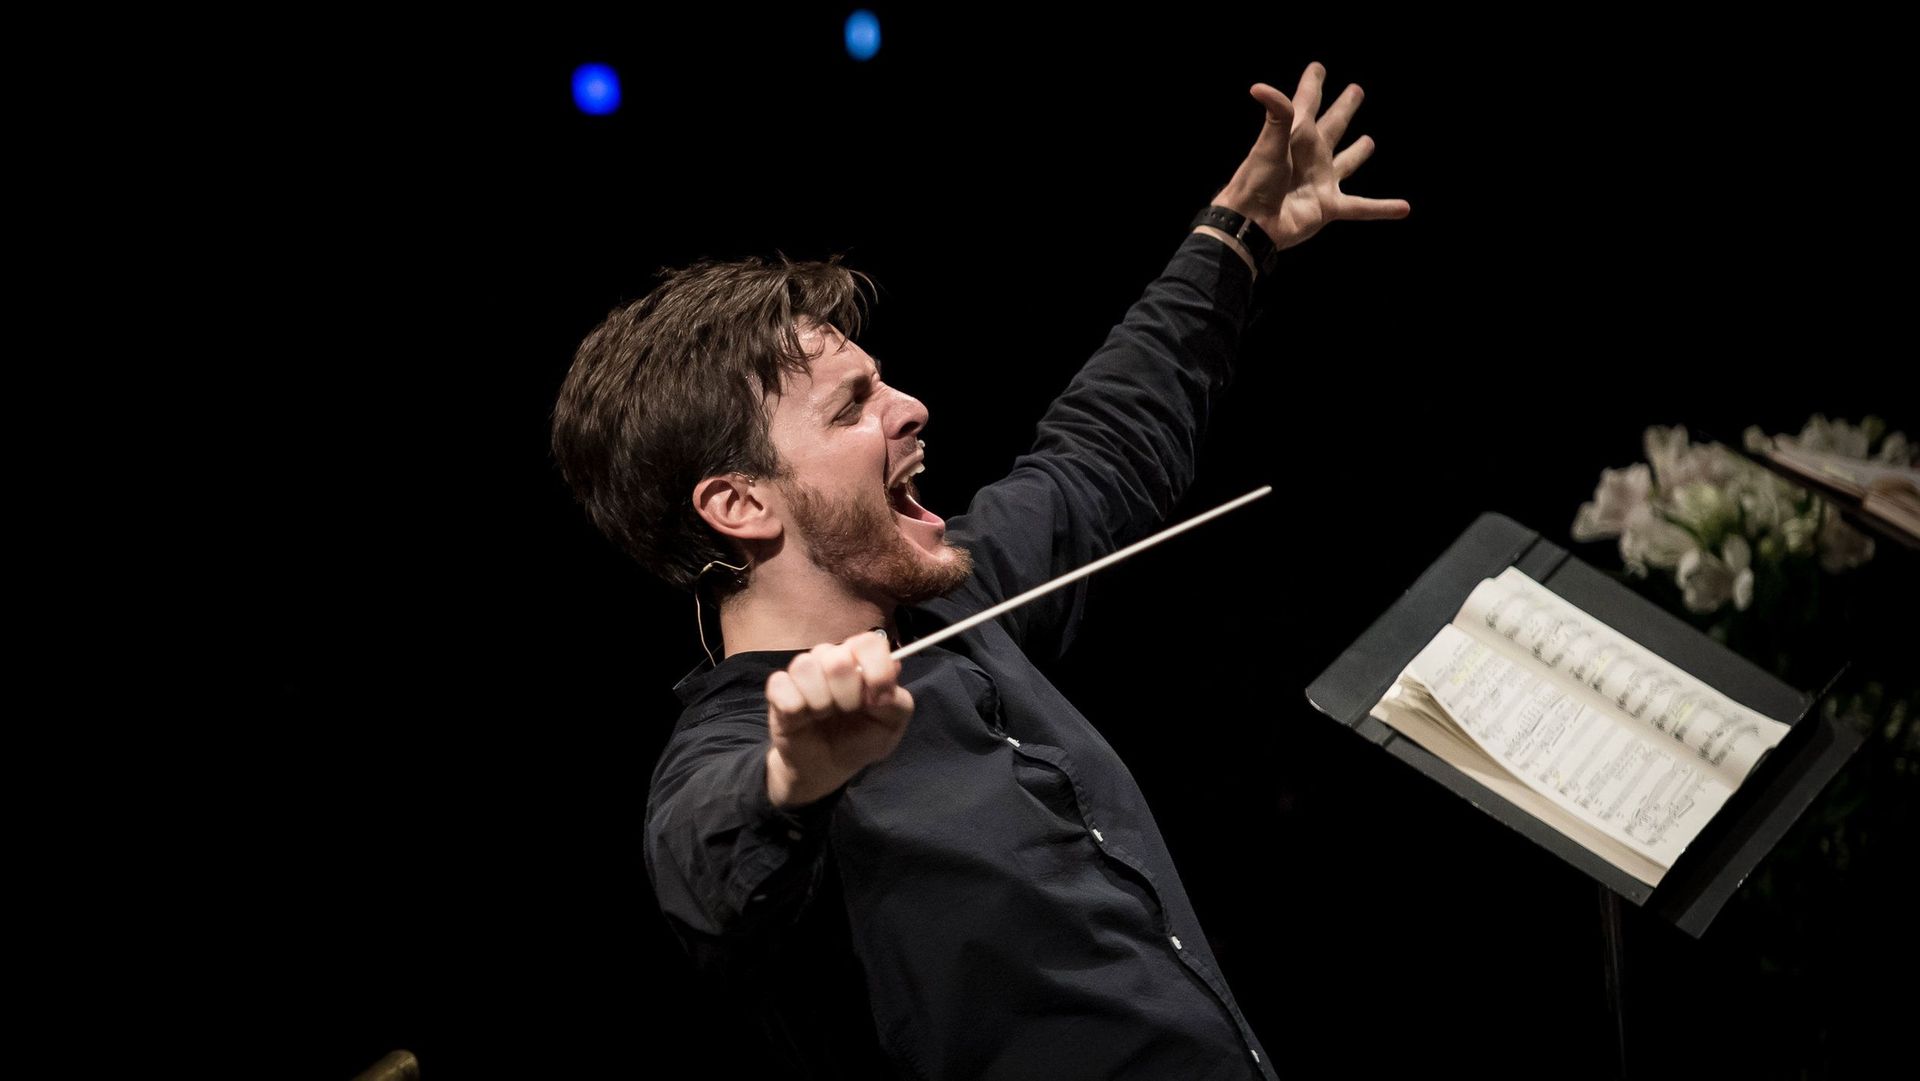 Le chef d’orchestre italien Michele Spotti, deuxième prix de la première édition du Concours Fondation Polycarpe, Concours International de Chefs d’orchestre d’opéra